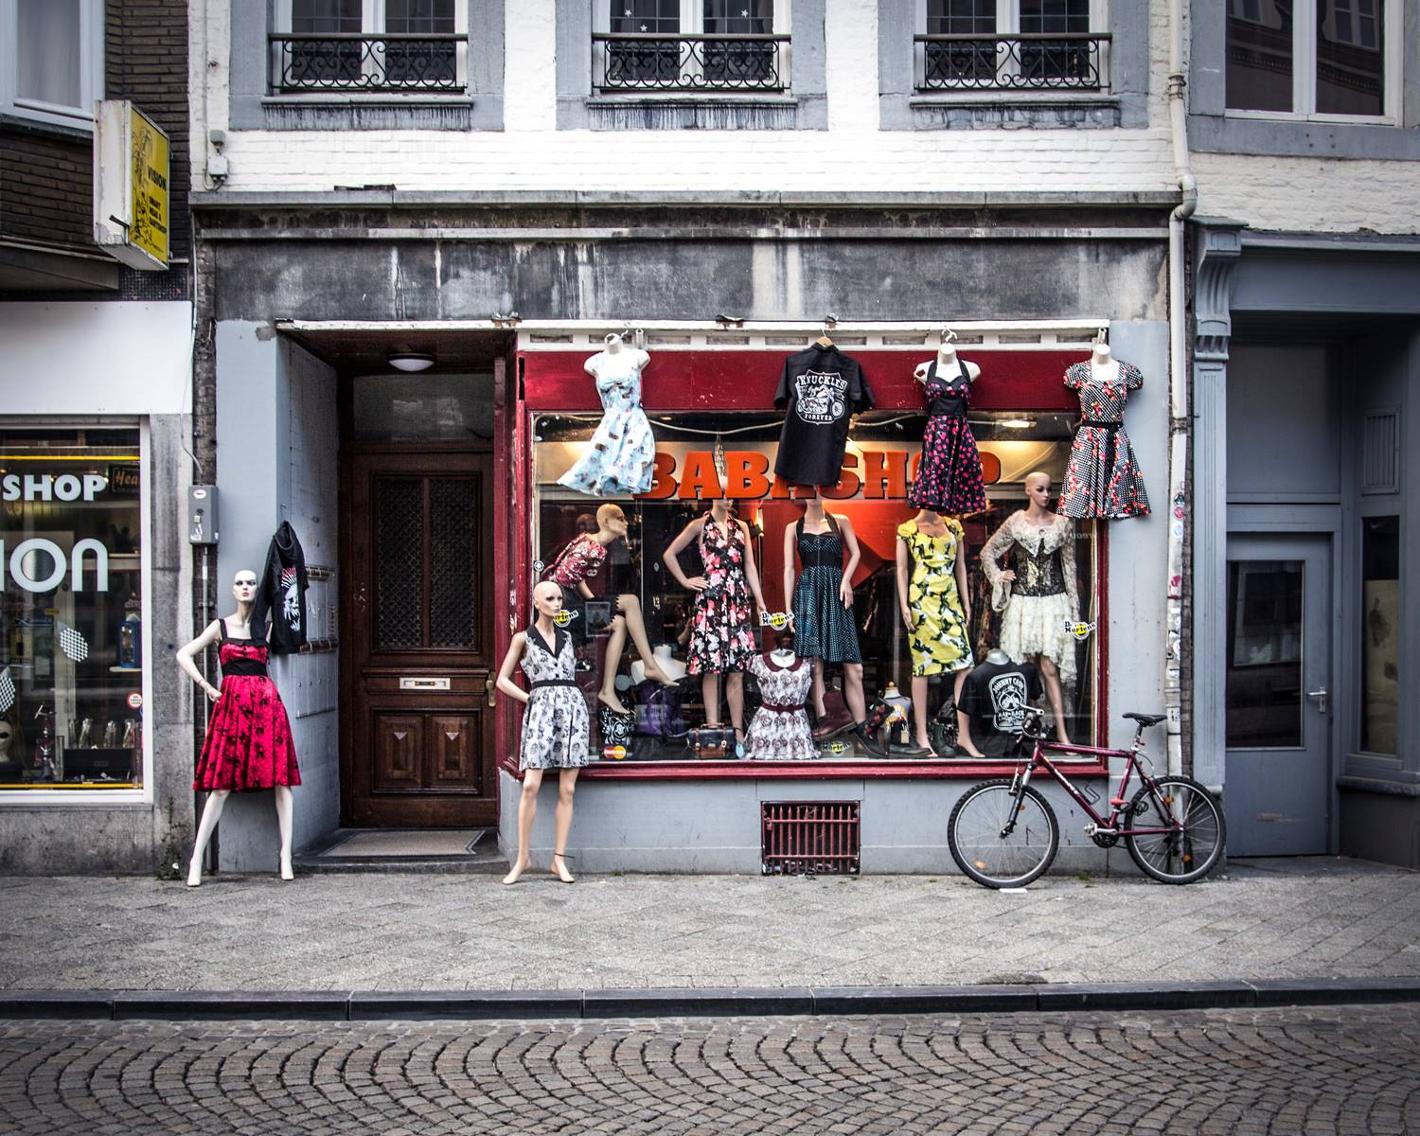 Foto Babashop in Maastricht, Einkaufen, Spaß beim Einkaufen - #1